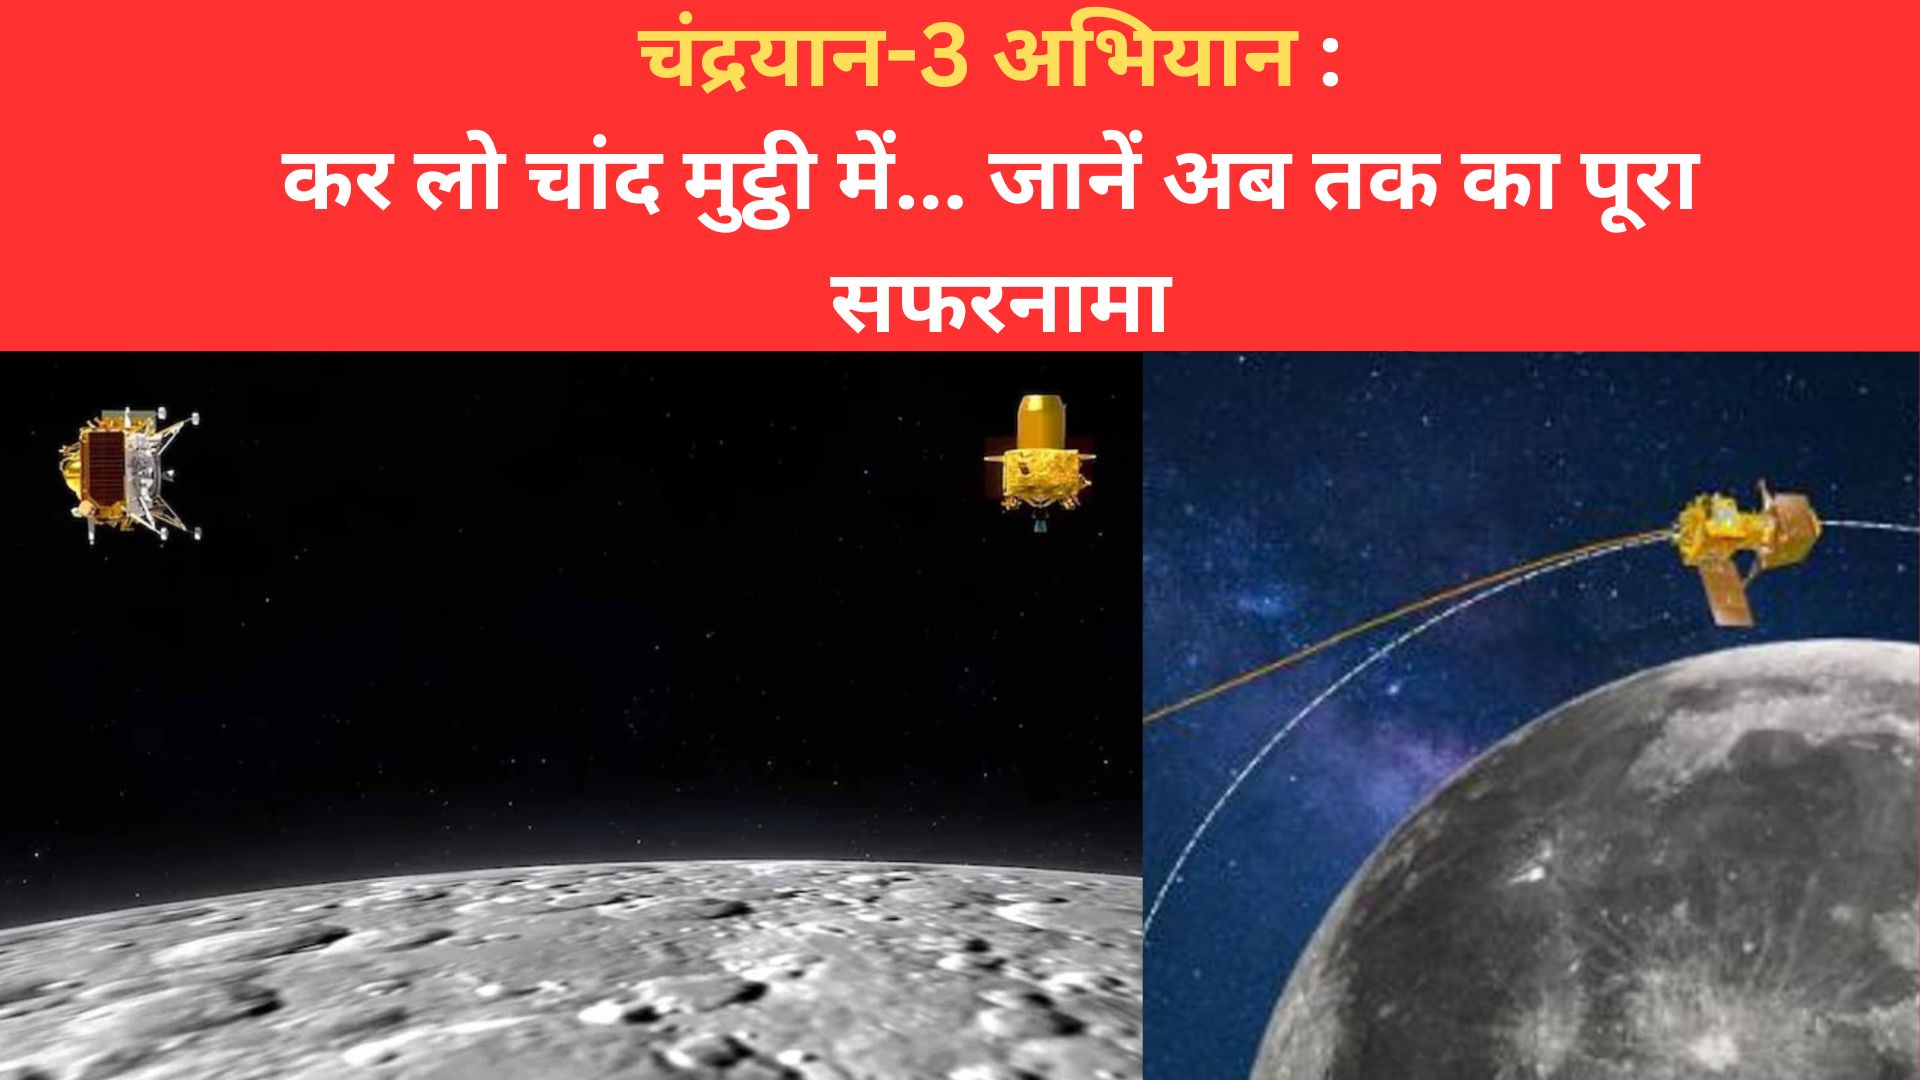 चंद्रयान-3 अभियान : कर लो चांद मुट्ठी में...चांद तक पहुंचने का अब तक का पूरा सफरनामा